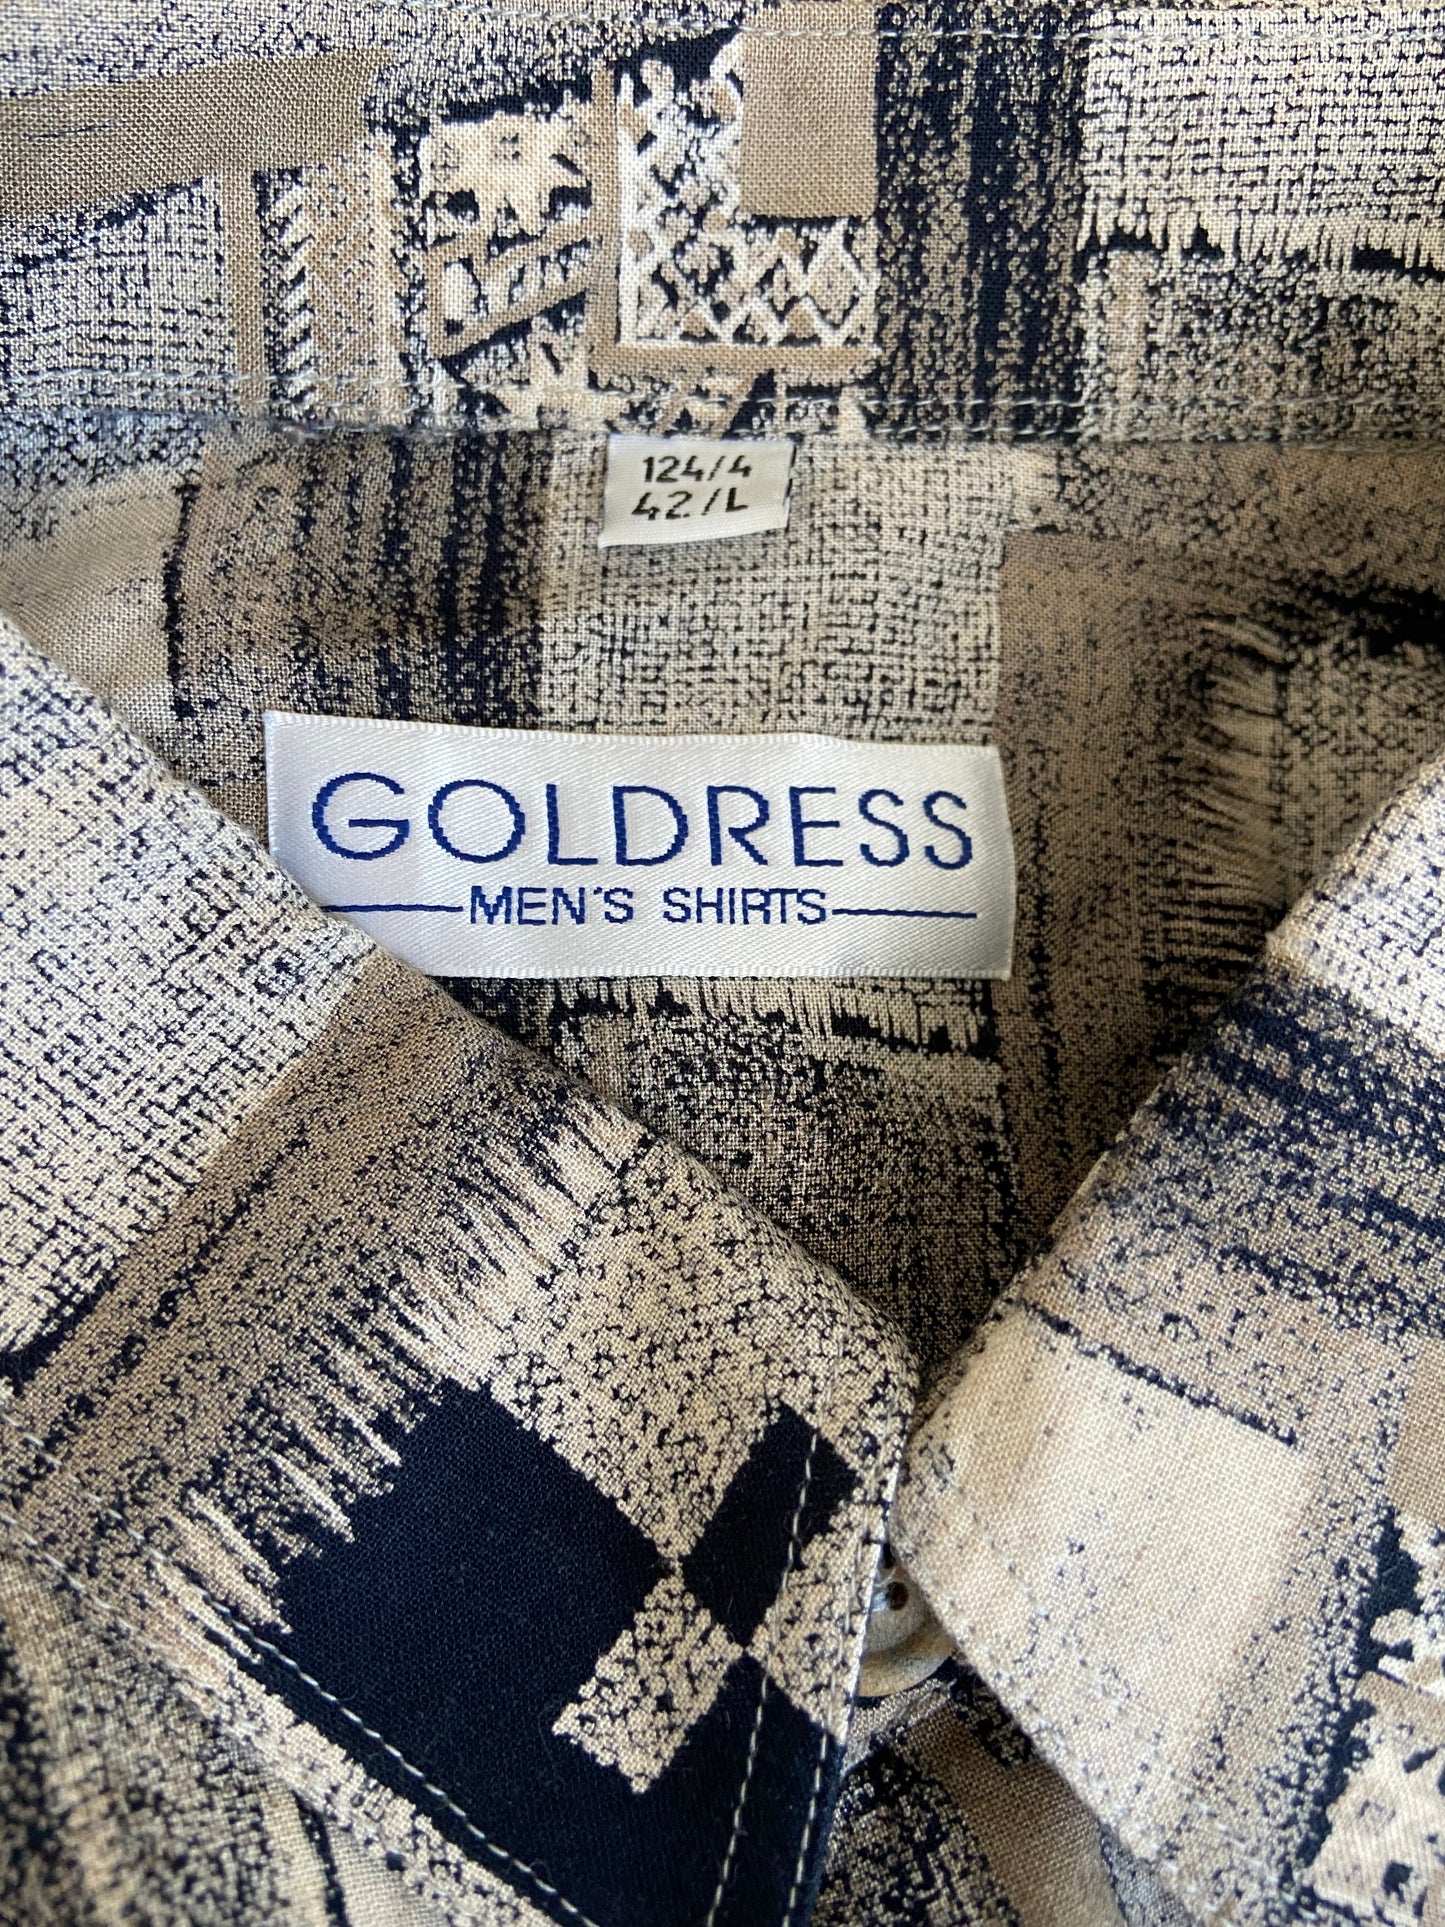 goldress shirt